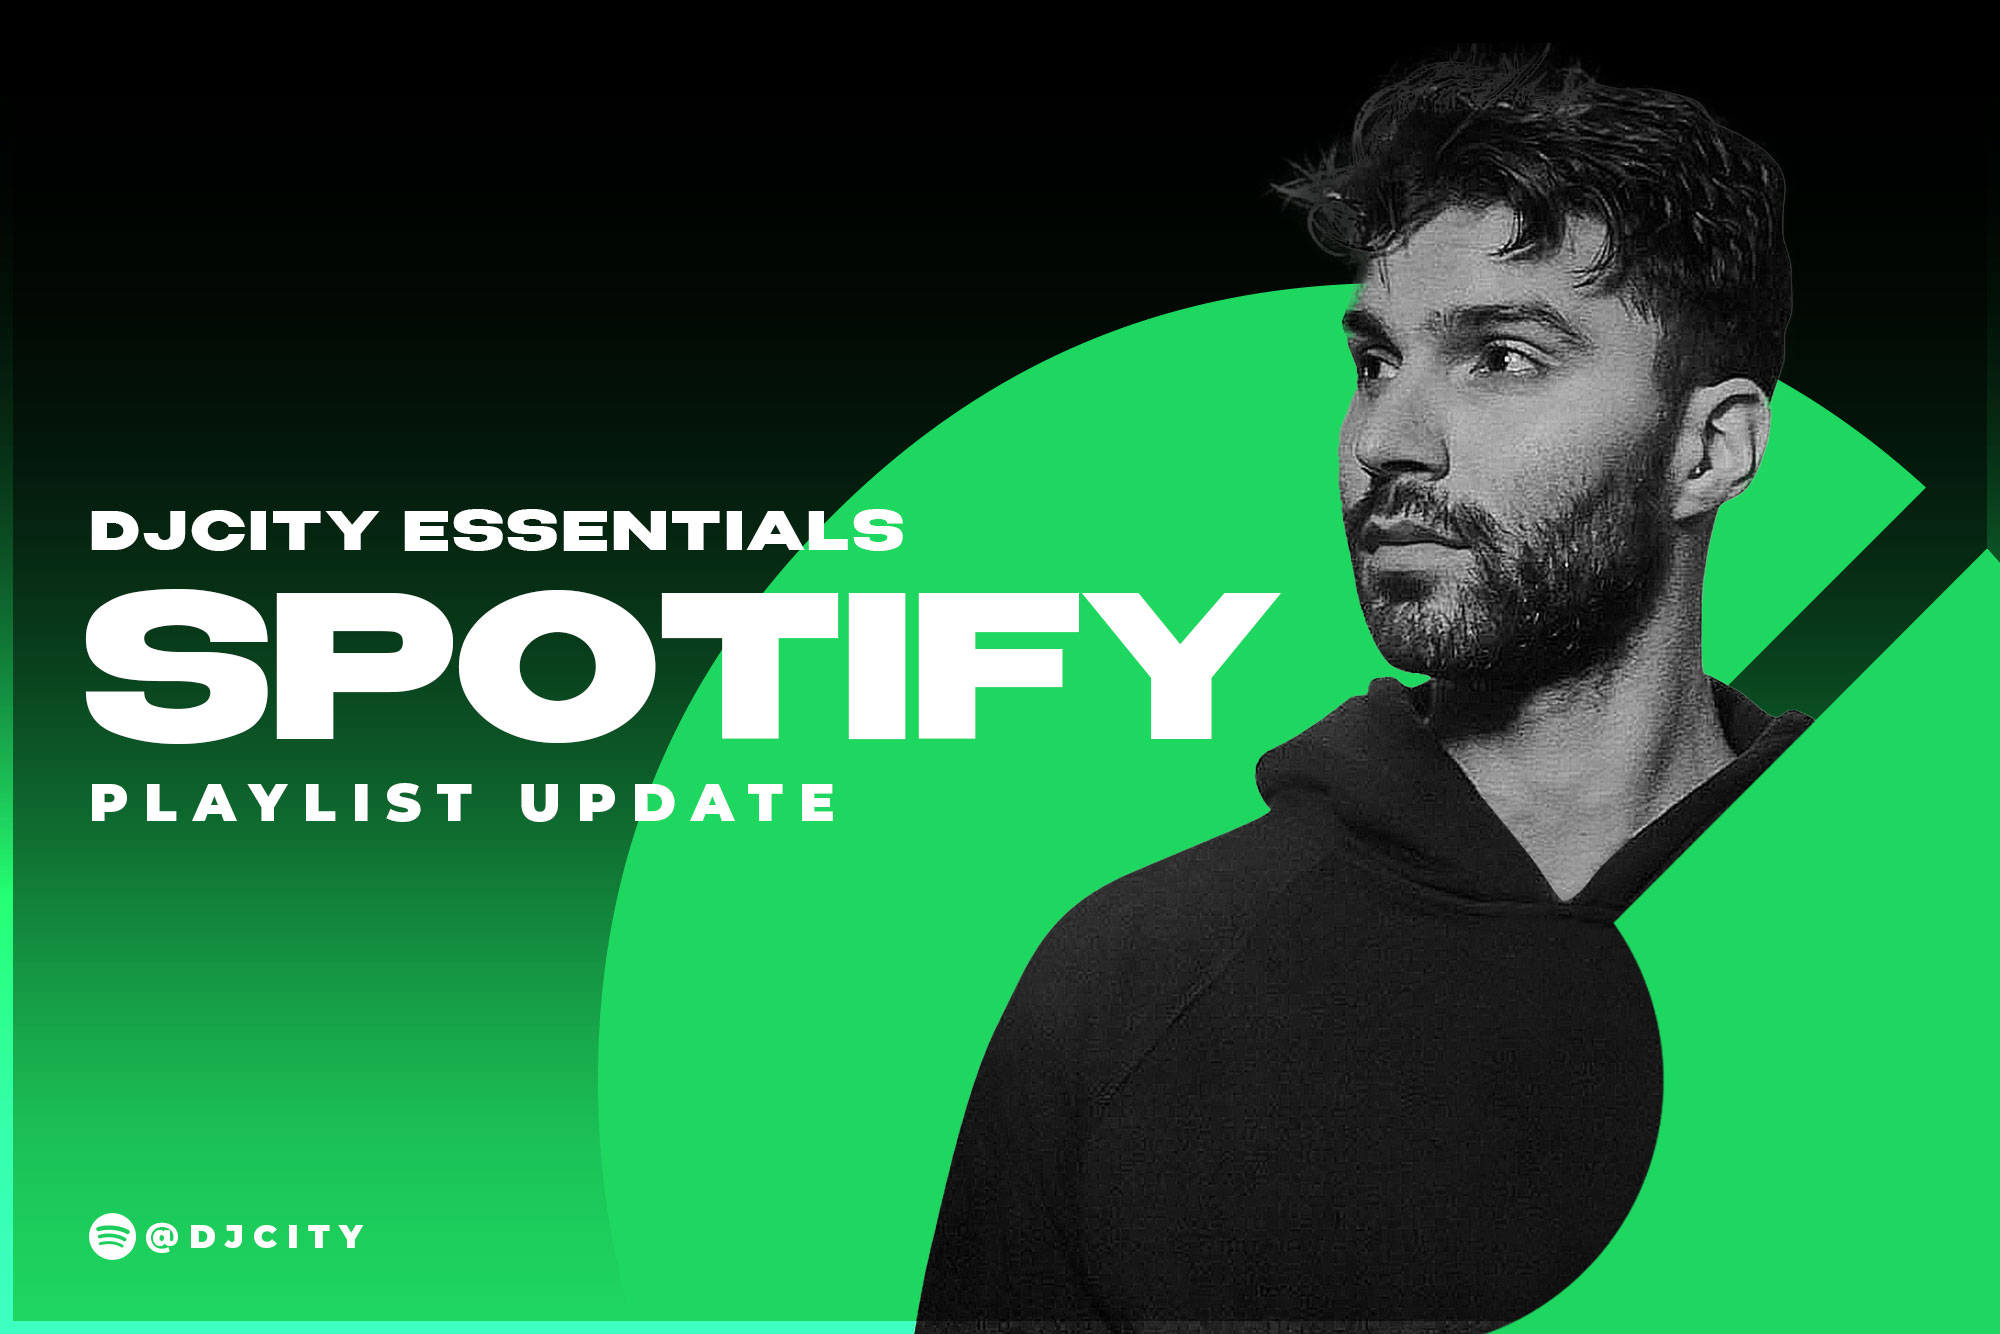 DJcity’s Spotify Playlist Update: Apr. 13